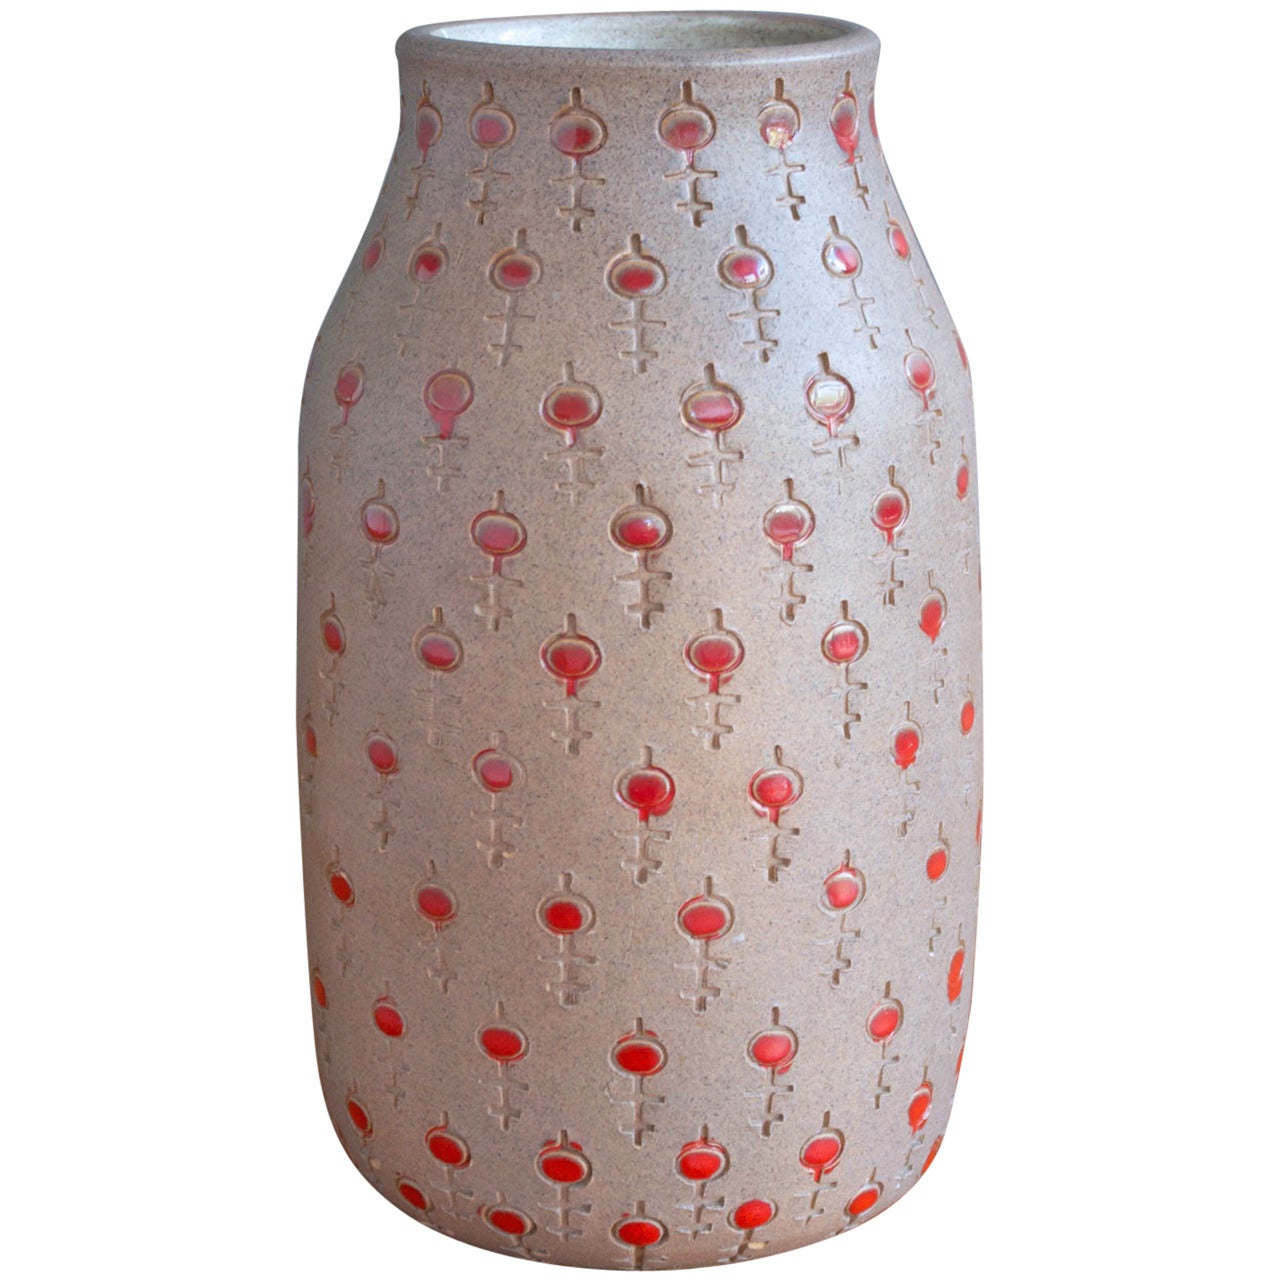 Ceramic Vase by Alvino Bagni for Raymor